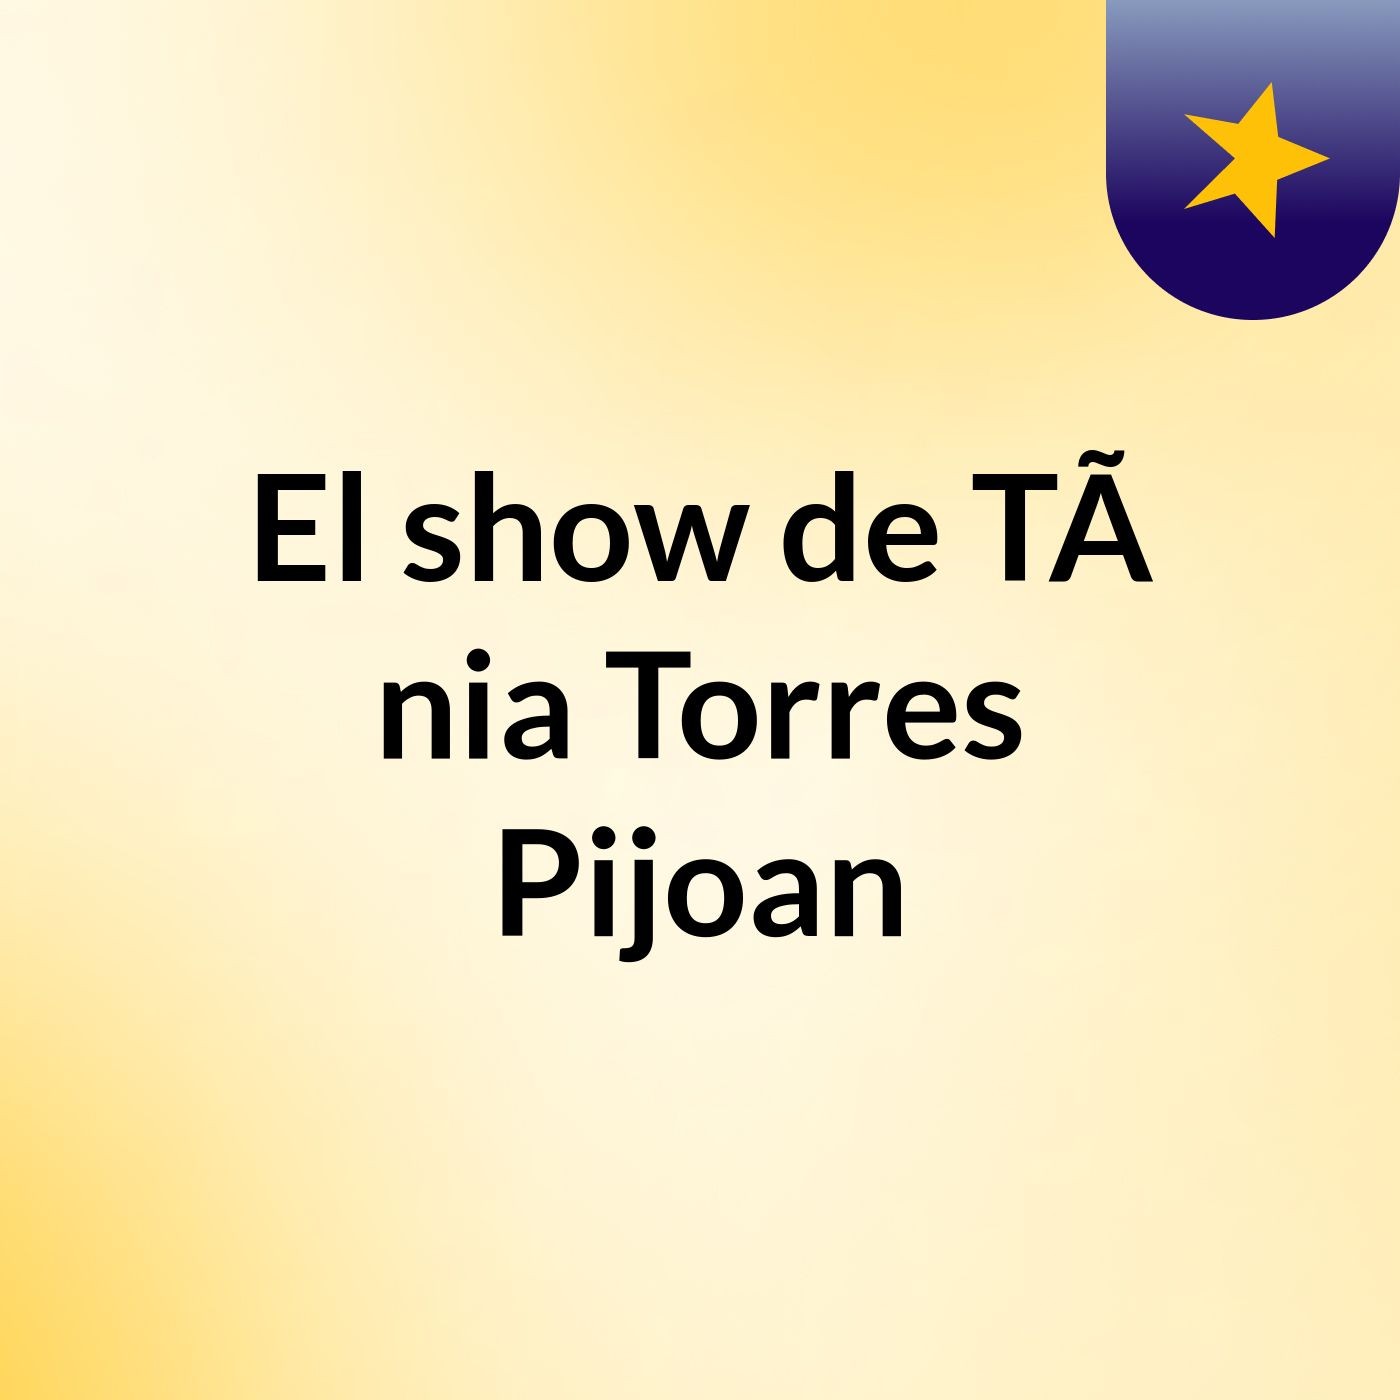 El show de TÃ nia Torres Pijoan